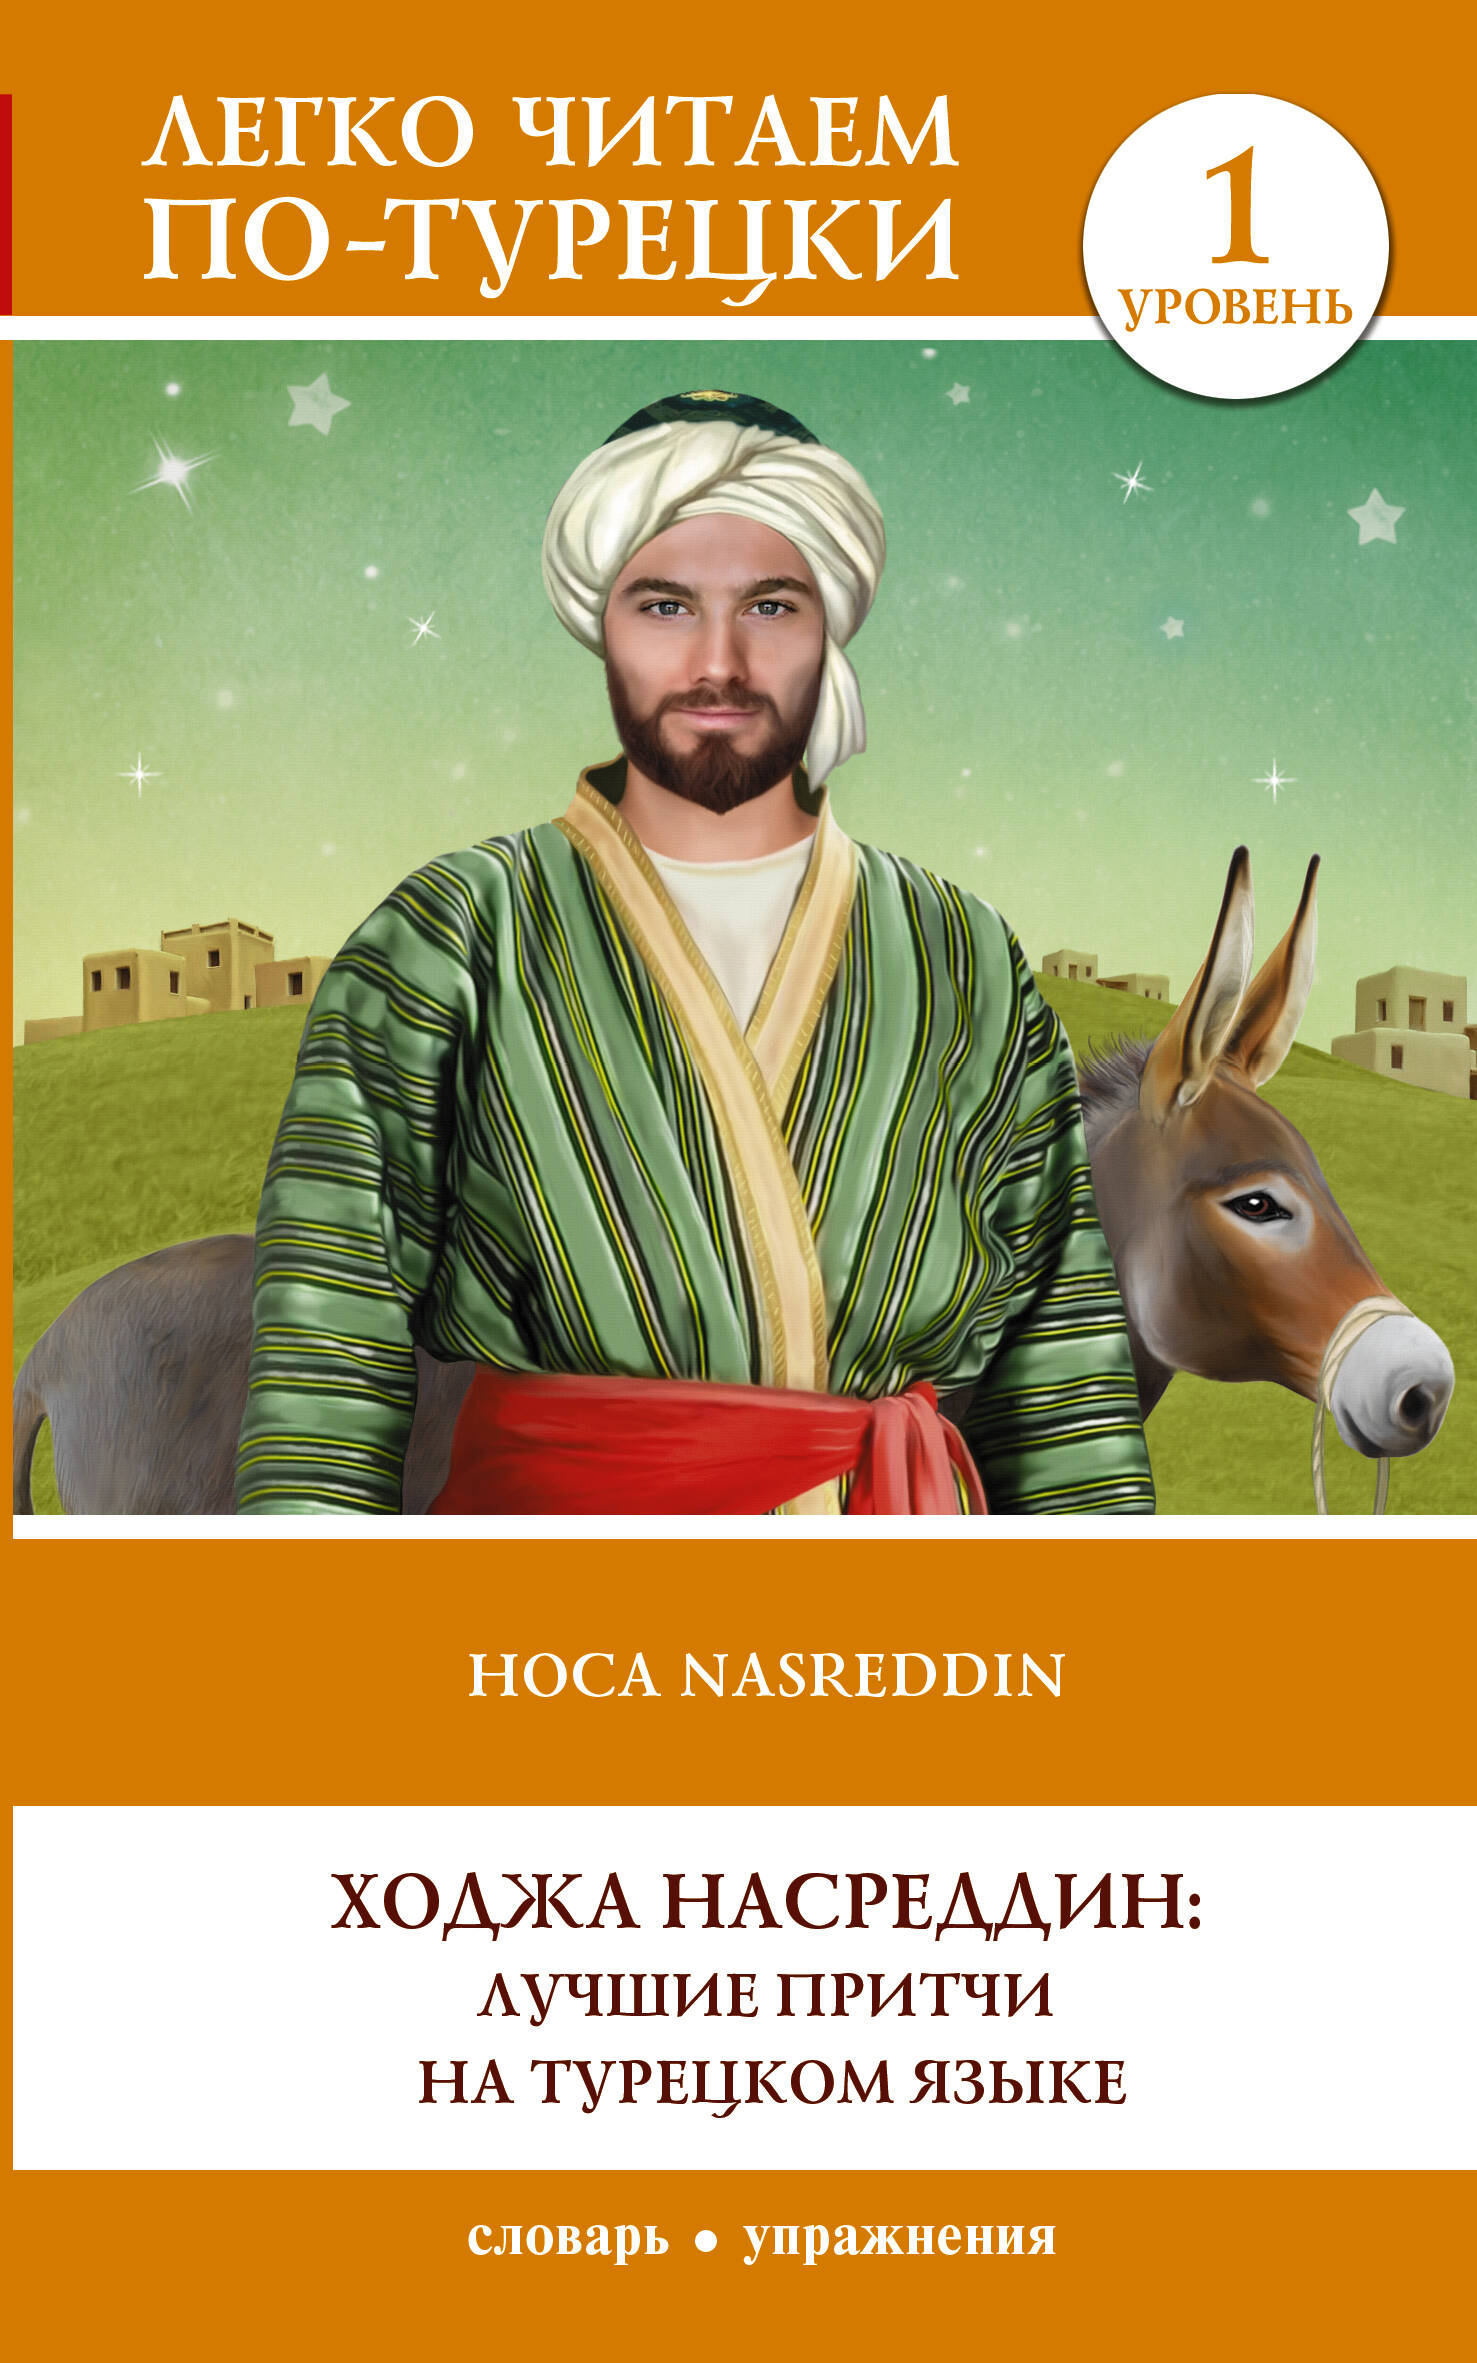 Ходжа Насреддин: лучшие притчи на турецком языке. Уровень 1 смешные и мудрые притчи ходжи насреддина